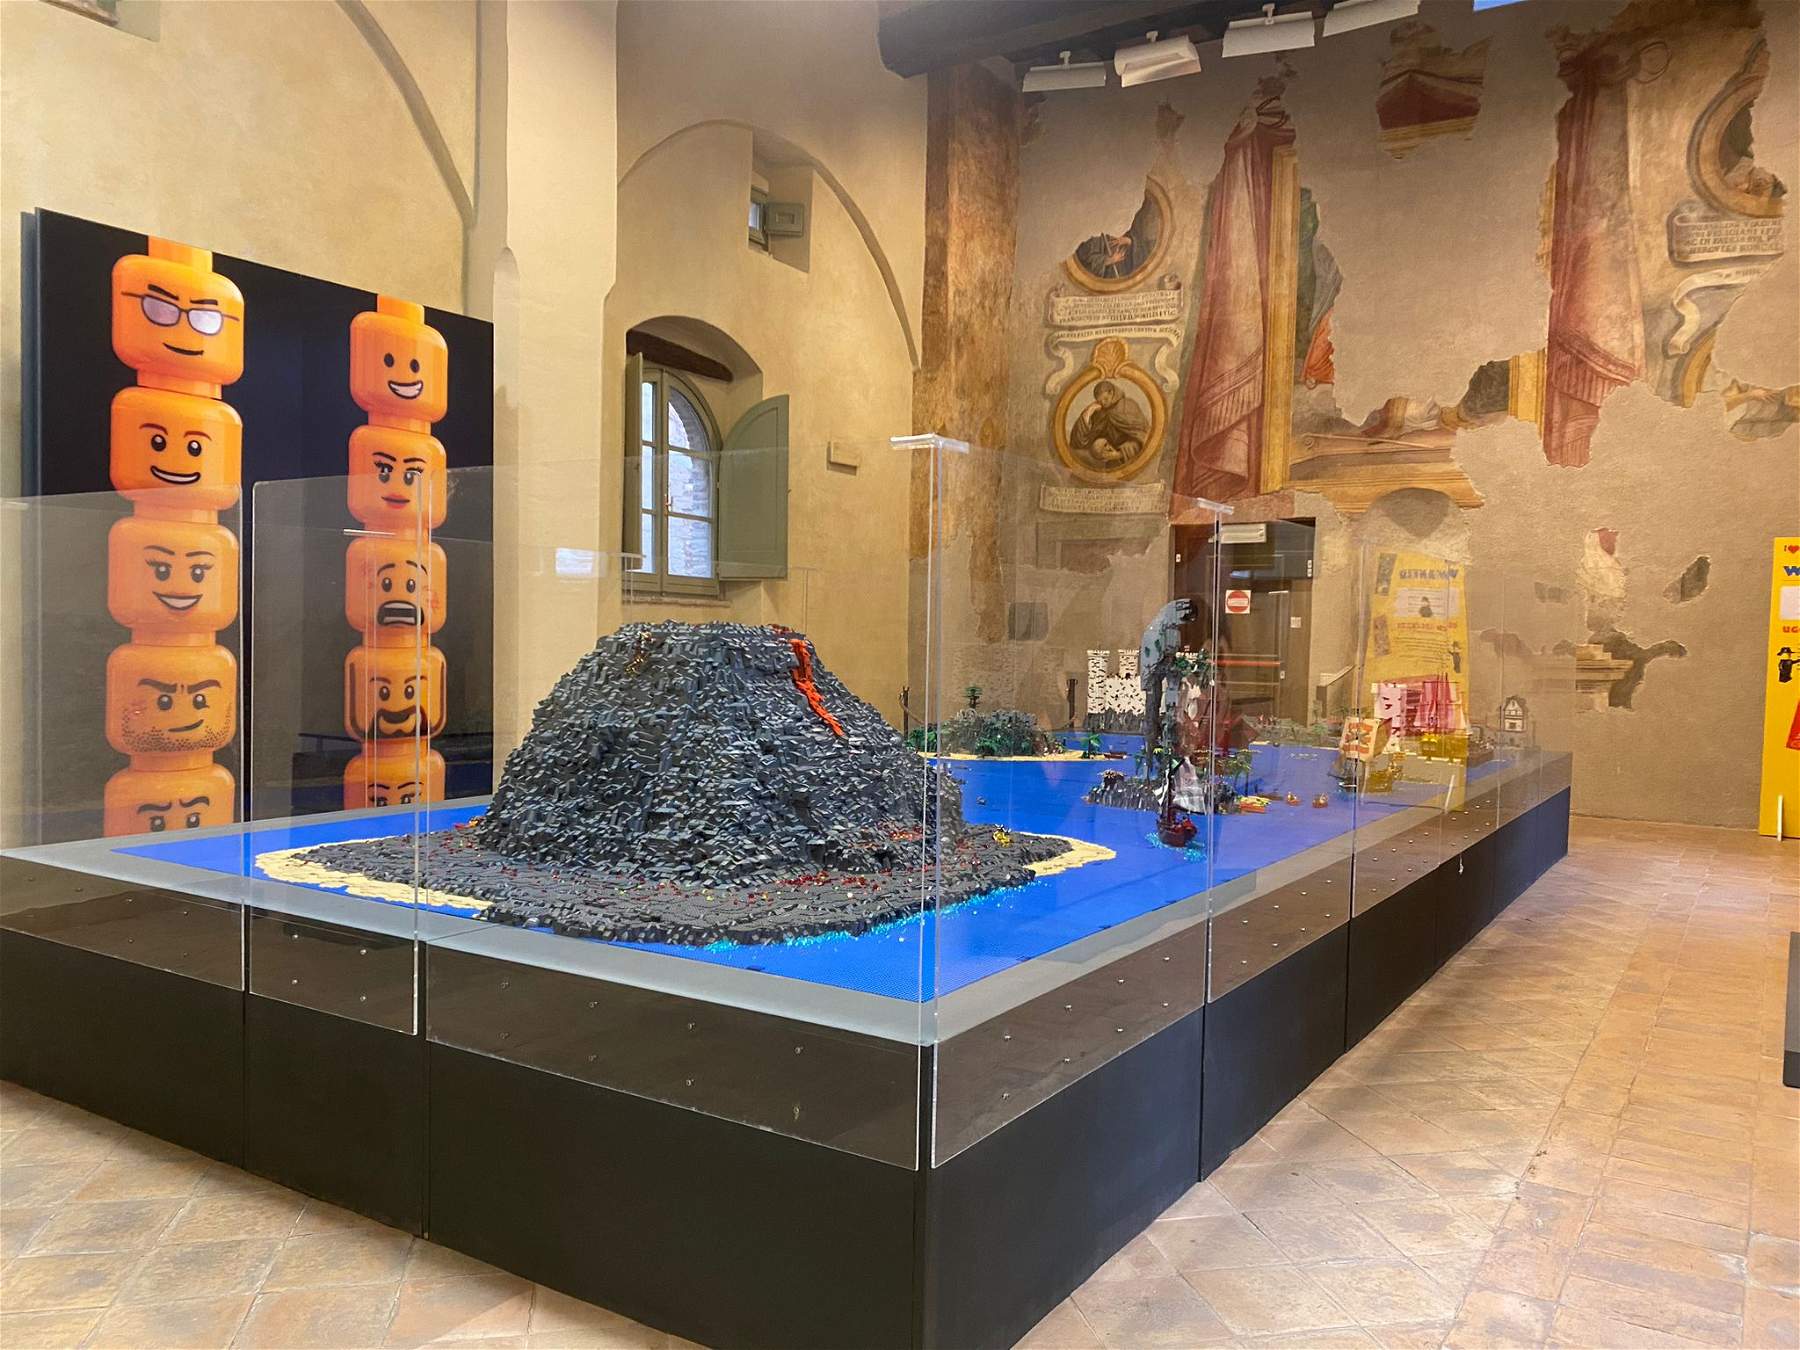 Foligno, I love Lego arrive au Palazzo Trinci: installations et peintures réalisées avec les célèbres briques